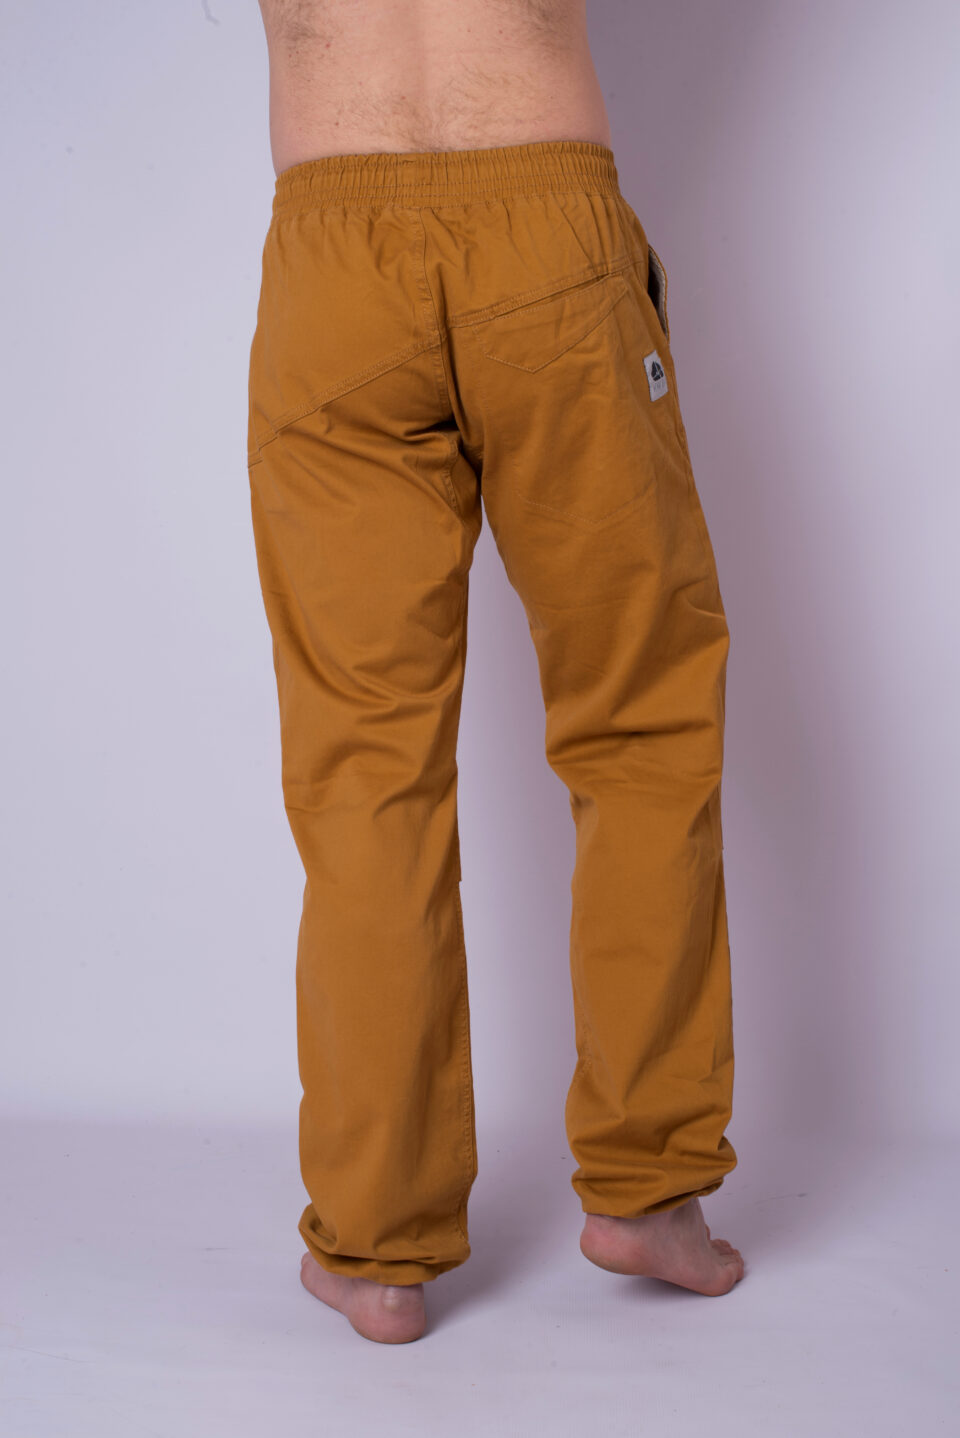 Cotton Crosscut pants - mustard yellow